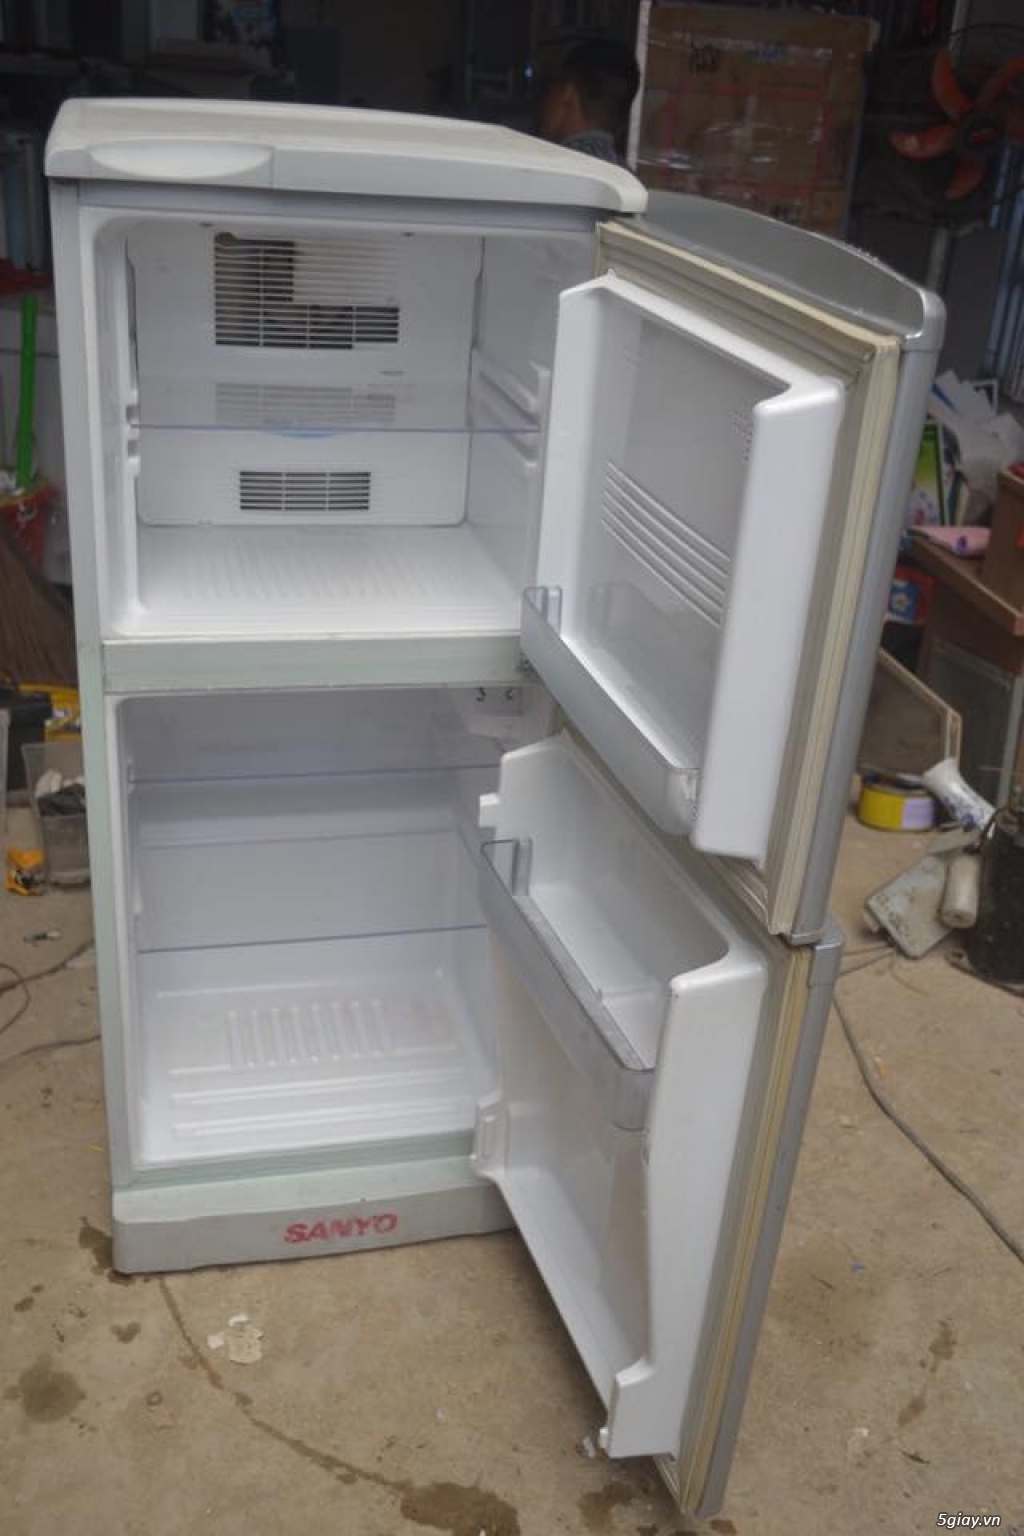 Thanh lý tủ lạnh Sanyo 120L k đông tuyết new 85% zin 100% - 1